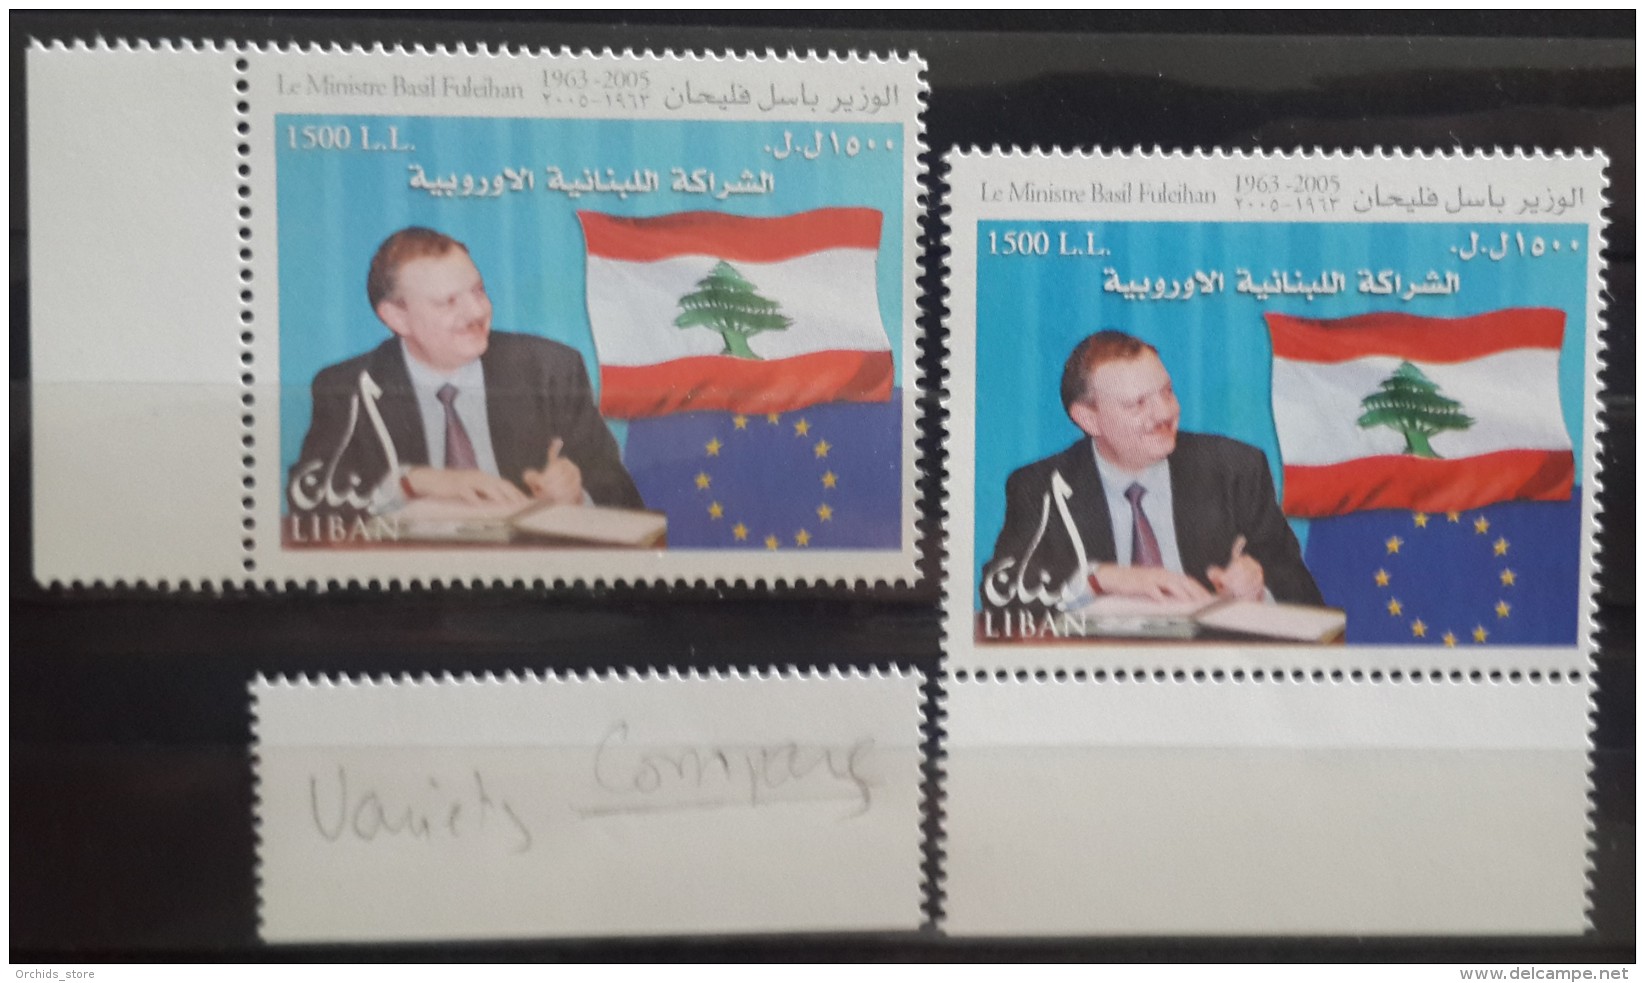 Lebanon 2007 Mi. 1473 MNH Stamp - Basil Fuleihan Variety - Lebanon